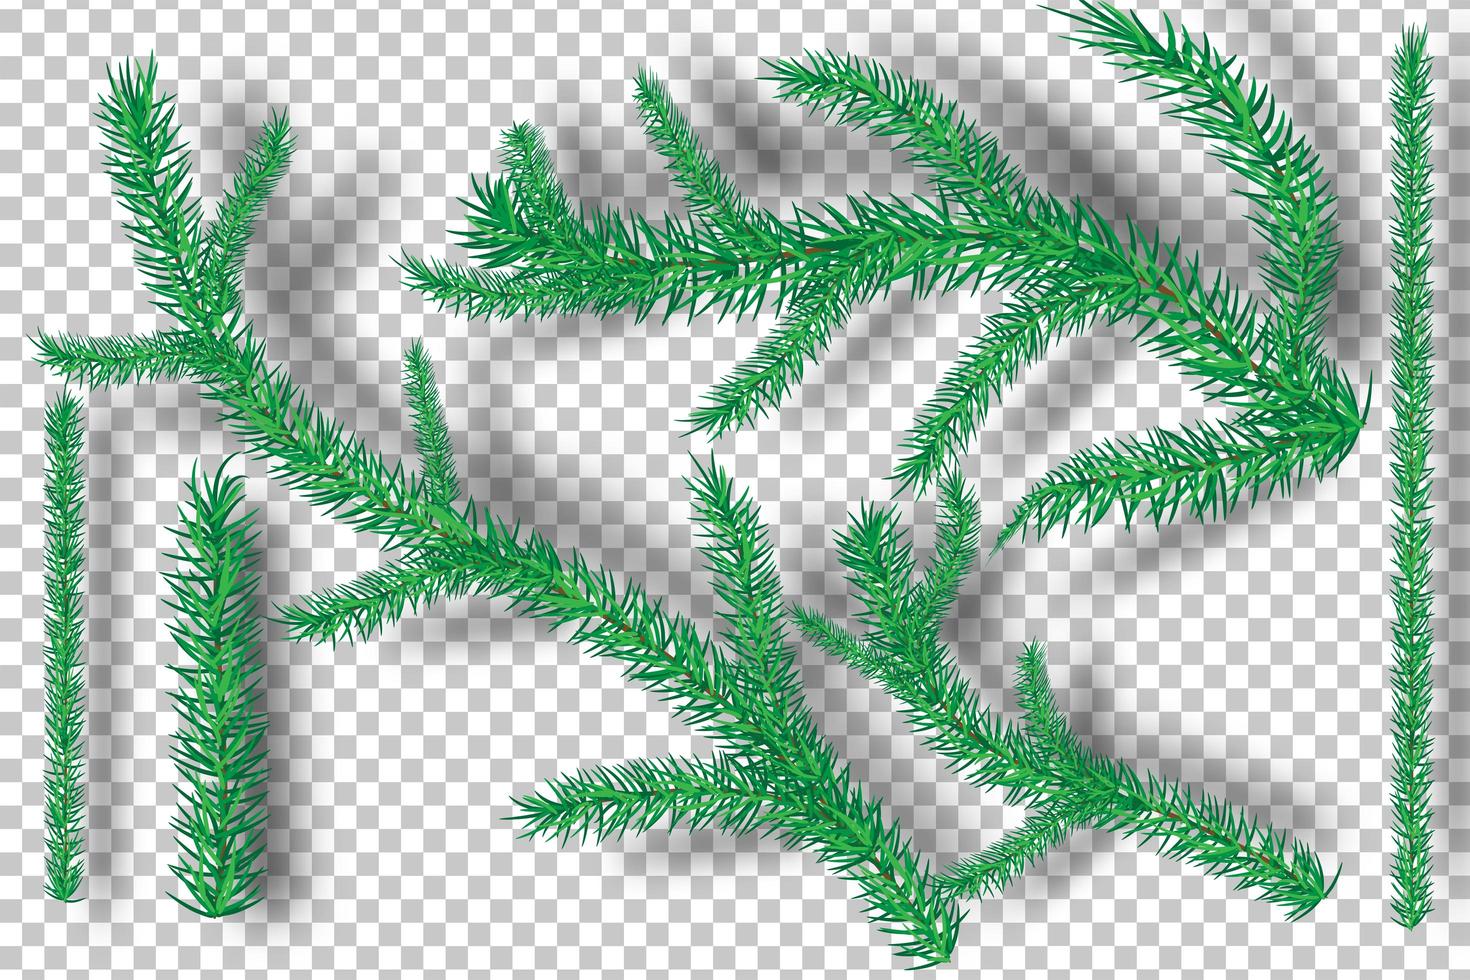 Weihnachtsbaumzweige auf Transparenzhintergrund vektor